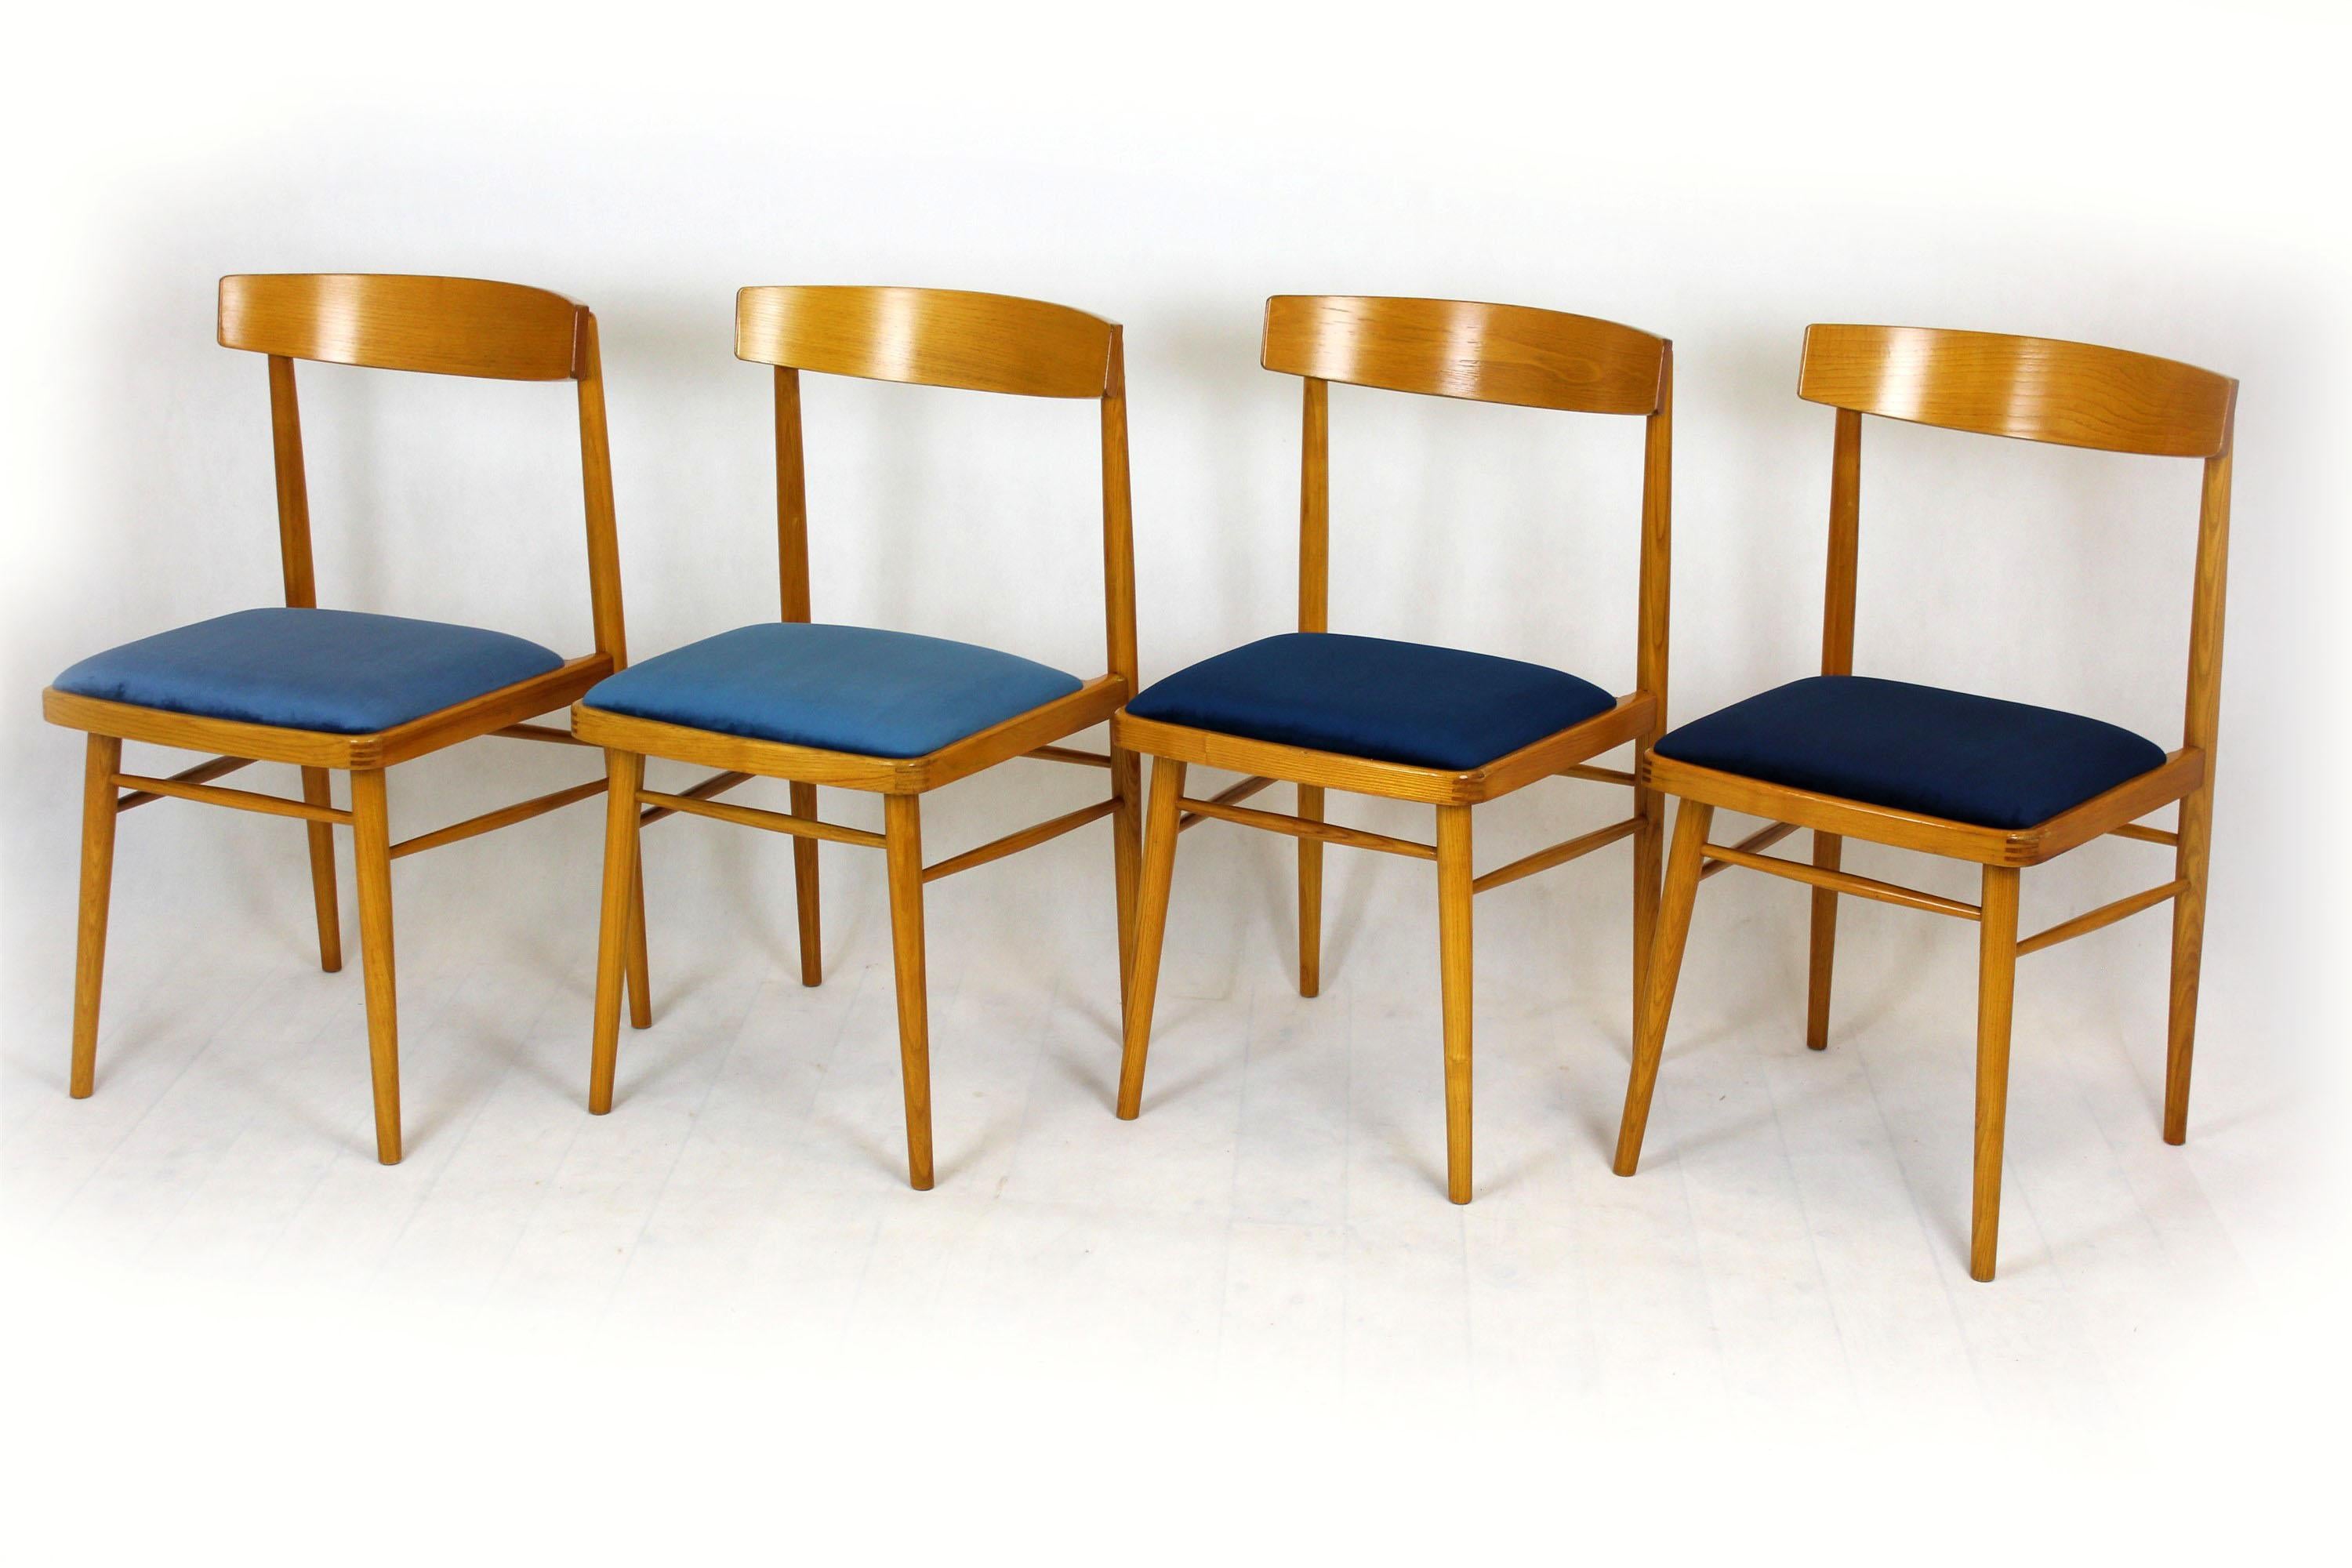 Cet ensemble de quatre chaises en frêne a été fabriqué par Ton (anciennement Thonet) dans les années 1960. Les sièges ont été remis à neuf, tapissés d'un tissu de haute qualité dans quatre nuances de bleu légèrement différentes.
  